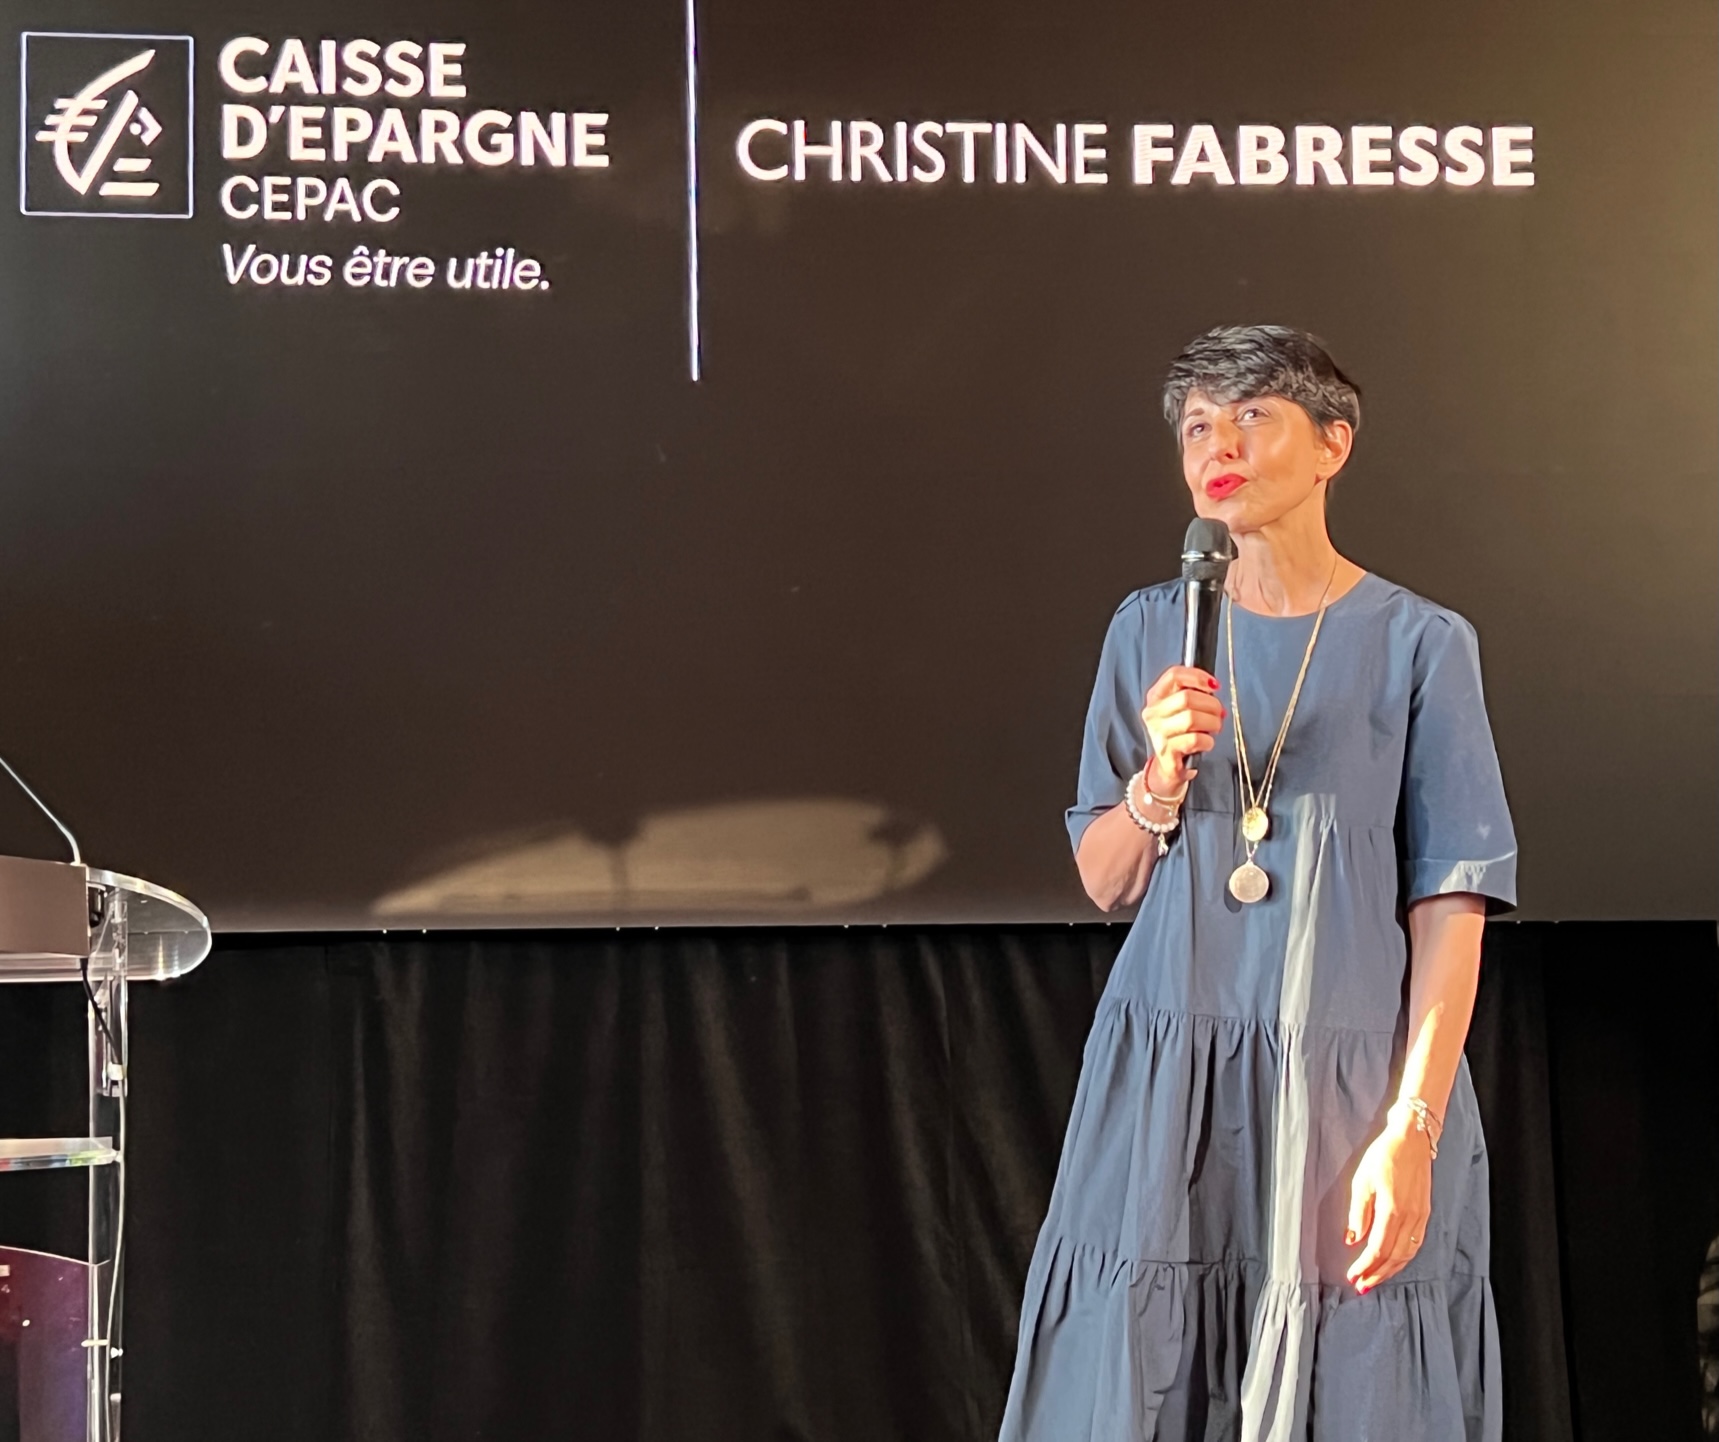 Christine Fabresse, présidente du directoire de la Caisse d’Épargne CEPAC. ©NBC